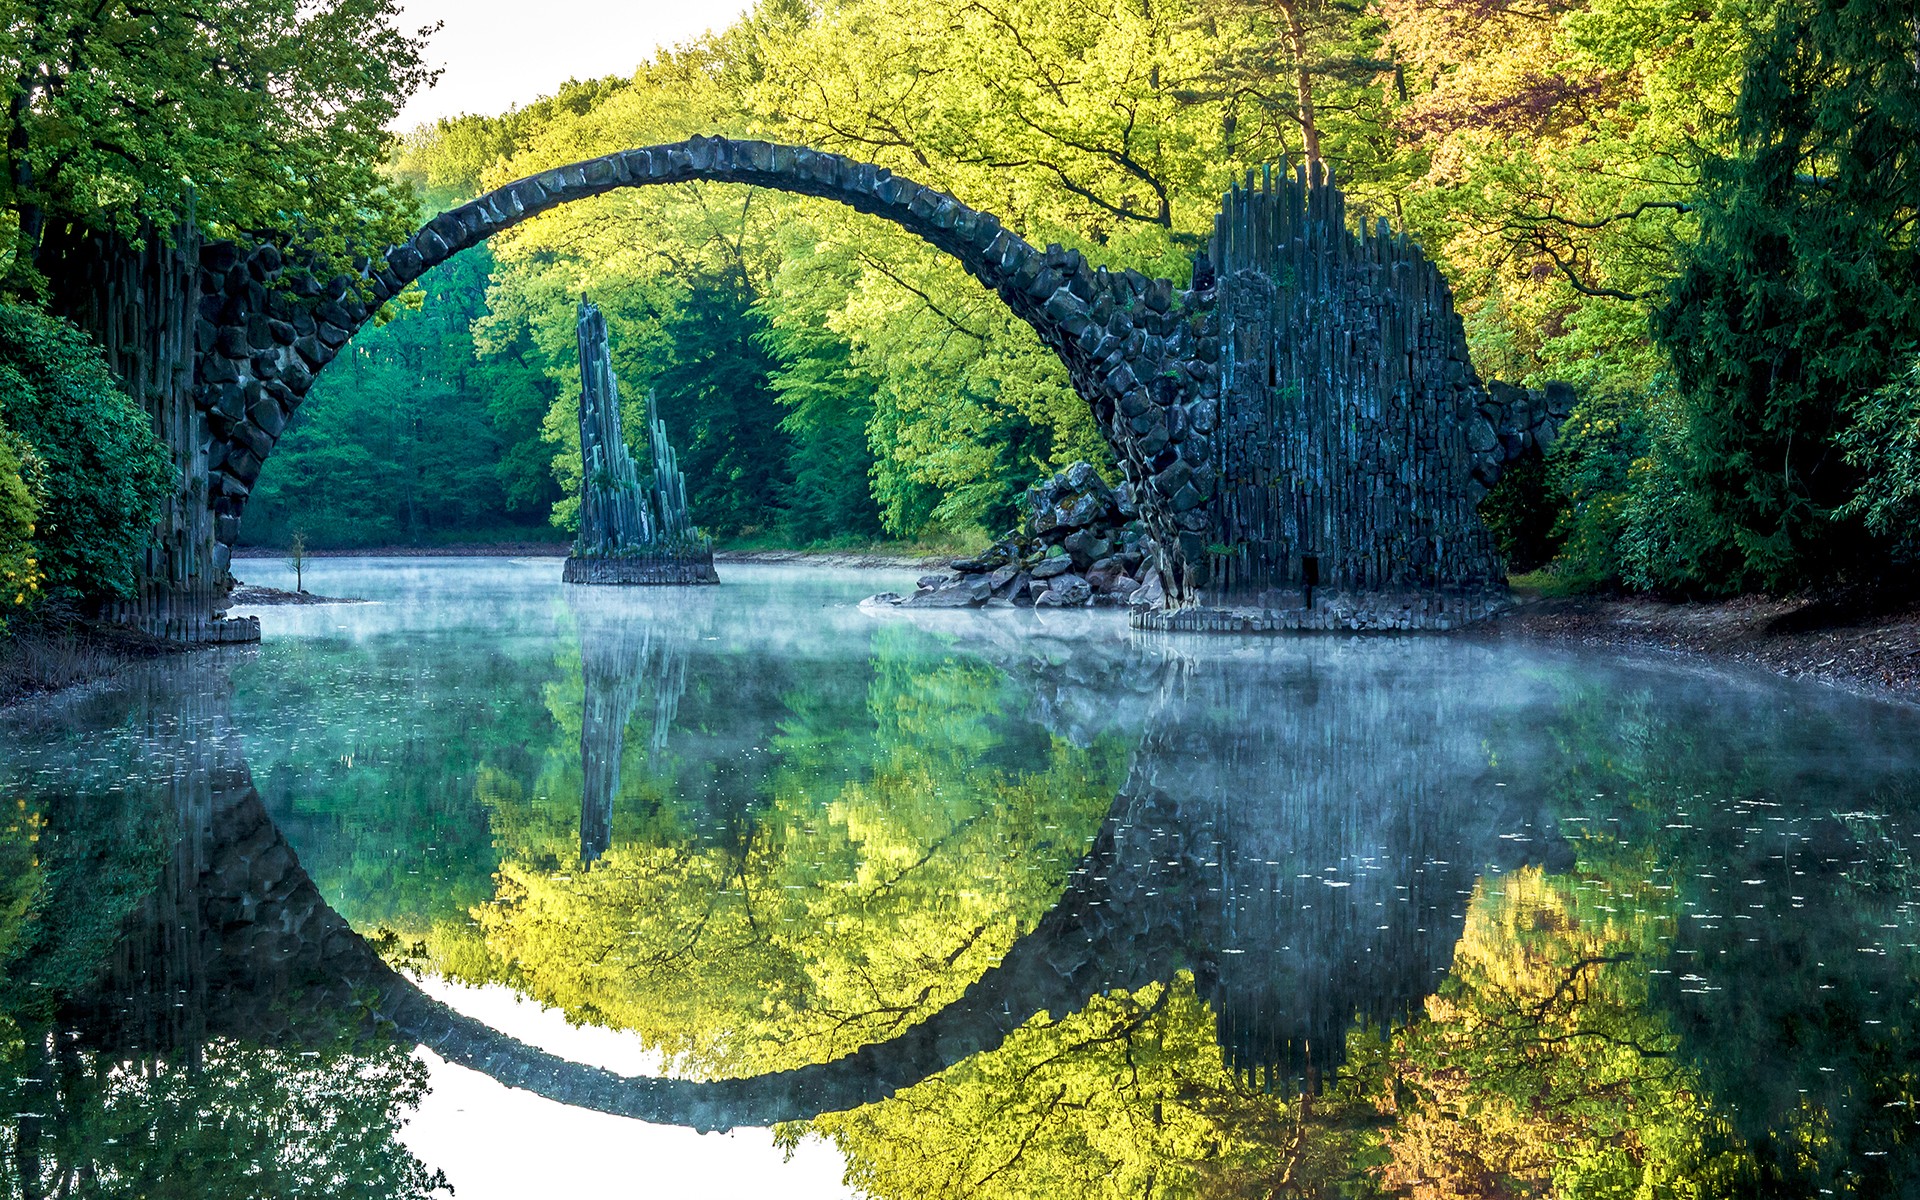 #landscape, #reflection, #river, #bridge, #nature, #stones